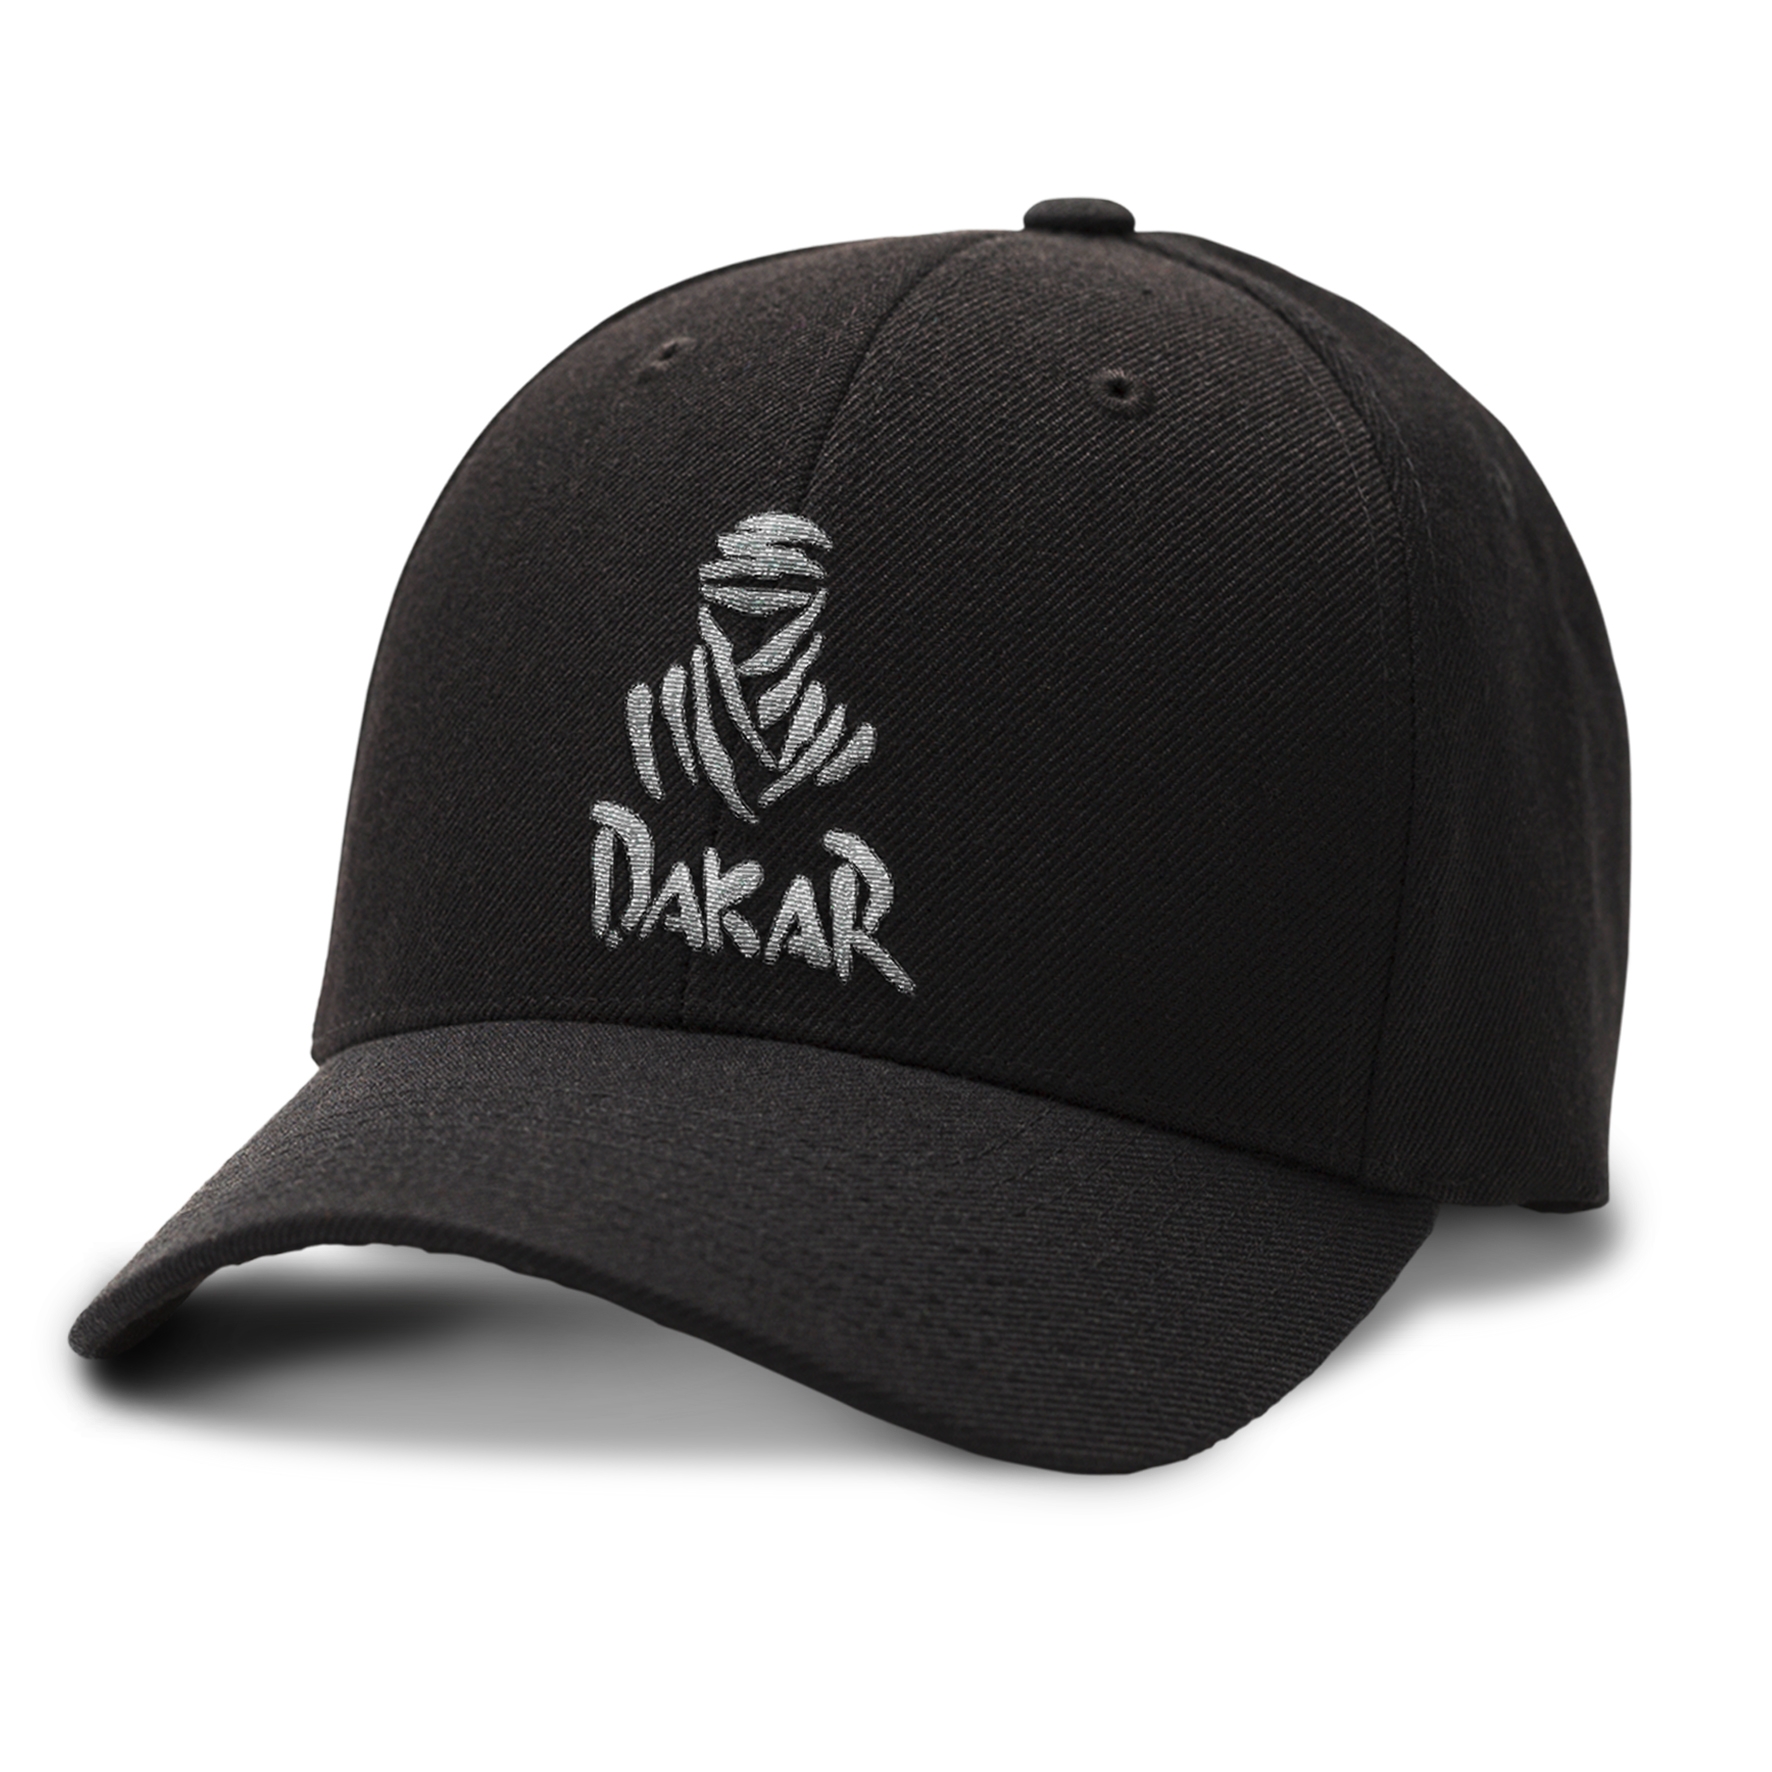 Une casquette Folhousa au Paris Dakar 2019 ! — Folhousa Original France